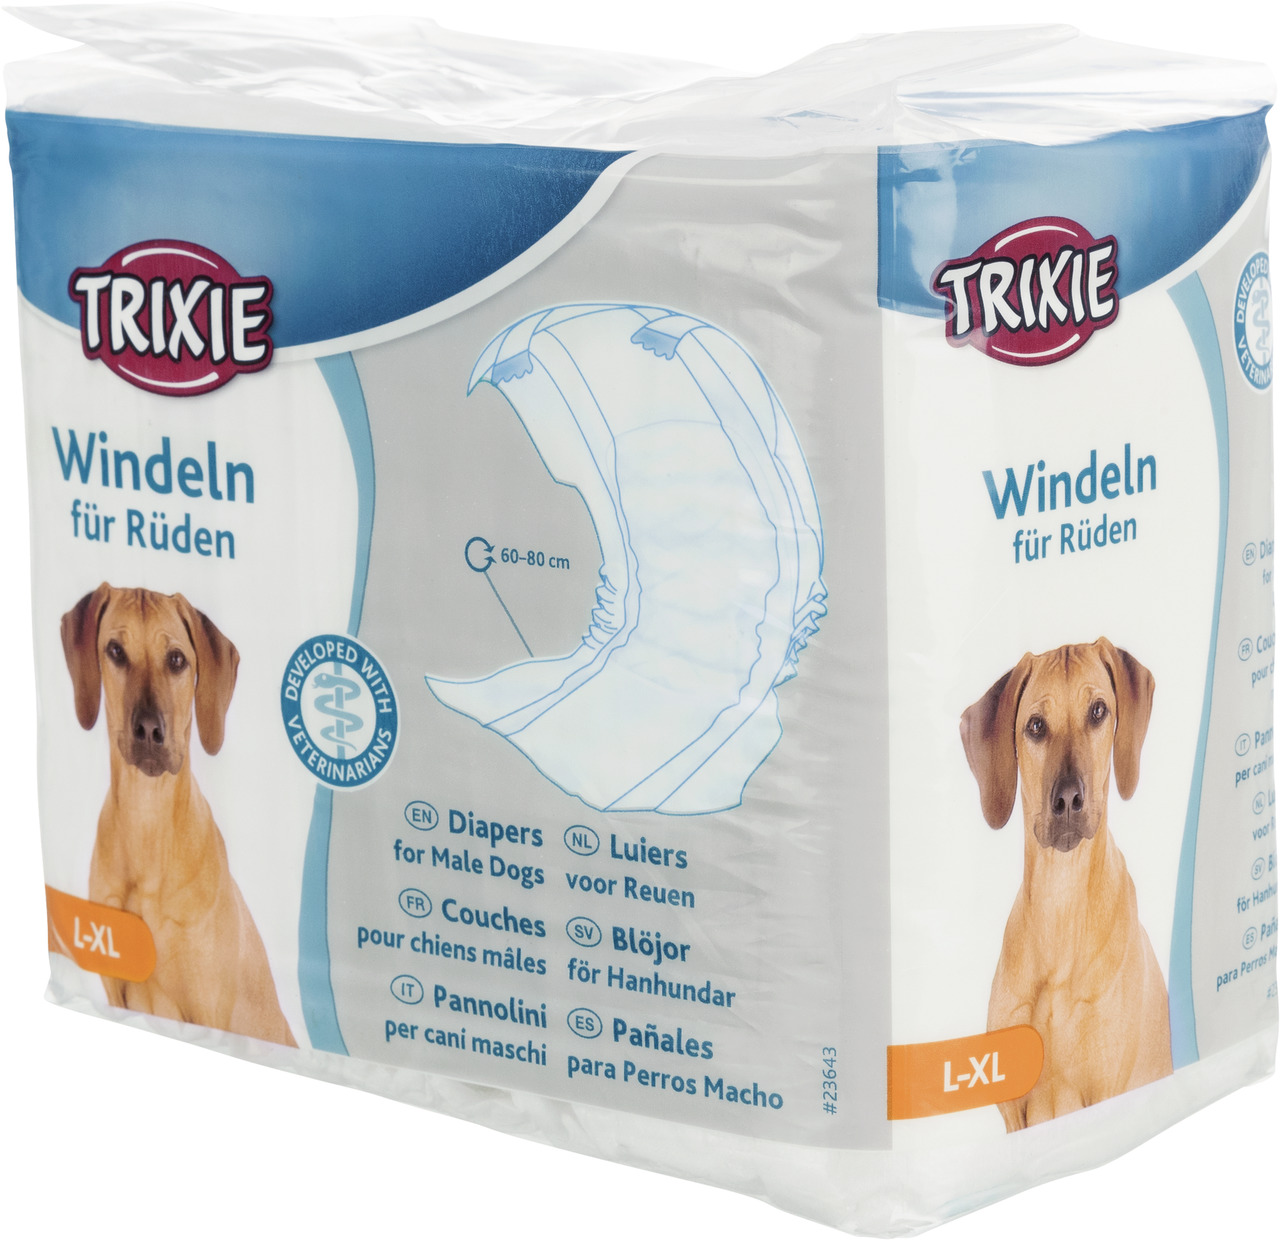 Trixie Windeln für Rüden Hunde Hygiene Inkontinenz Markieren L - XL